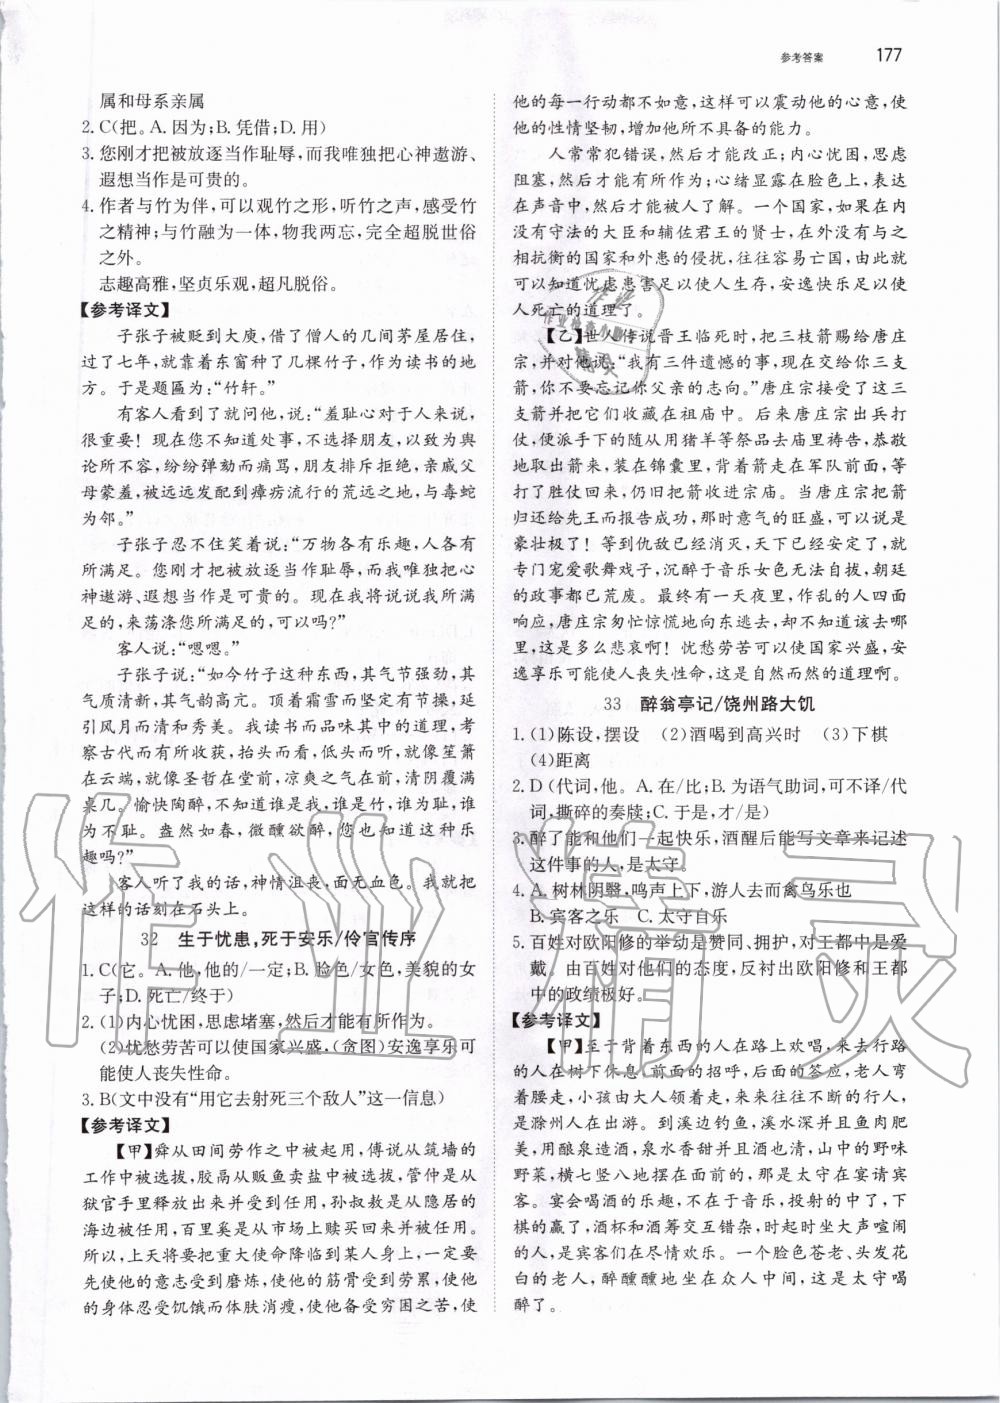 2019年锐阅读初中语文阅读训练5合1中考 第23页